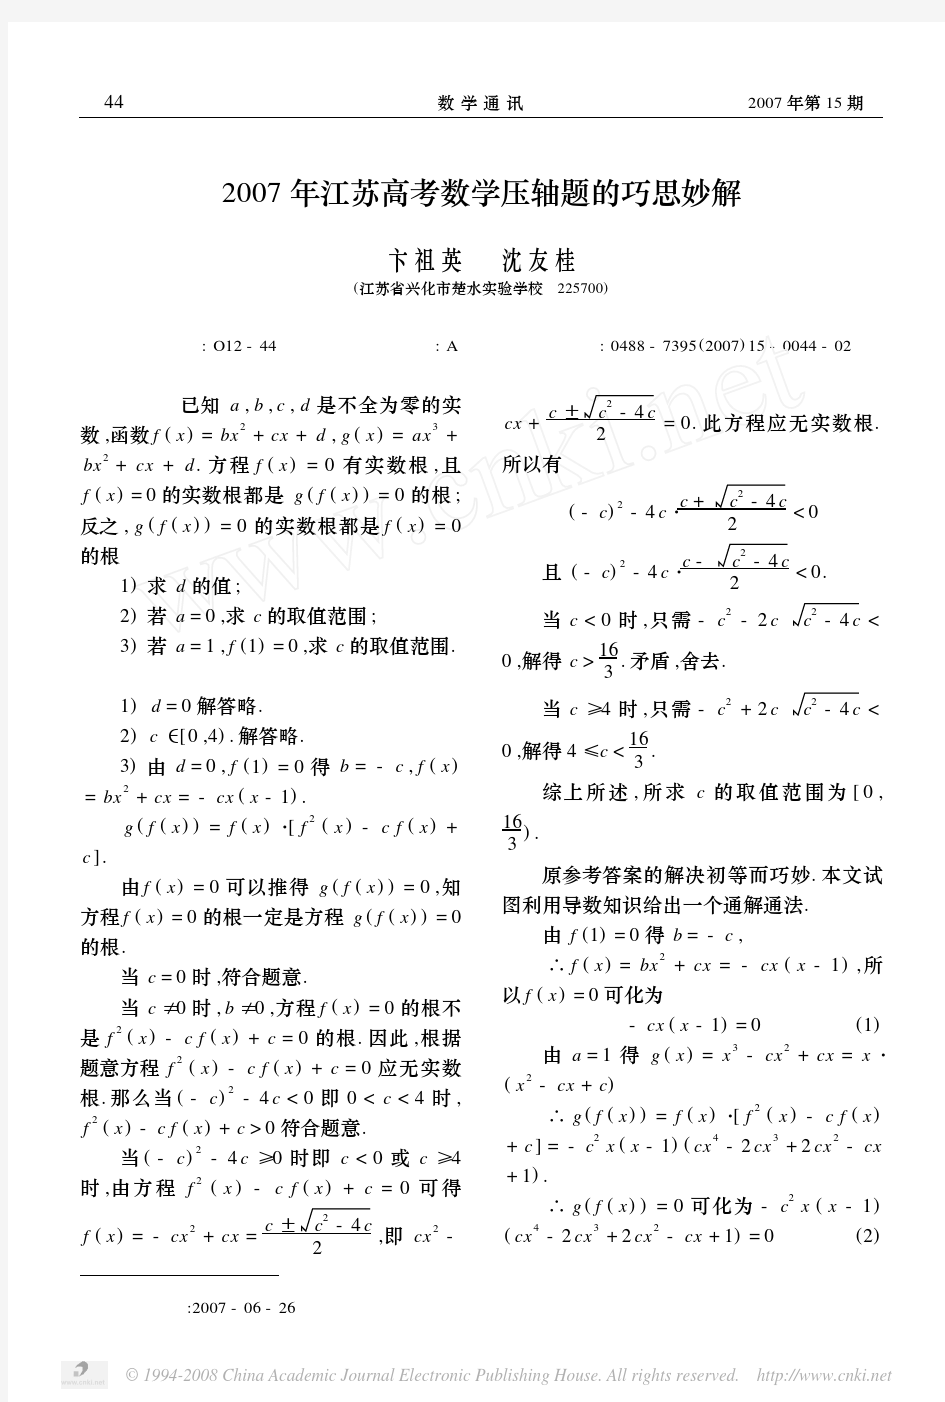 2007年江苏高考数学压轴题的巧思妙解